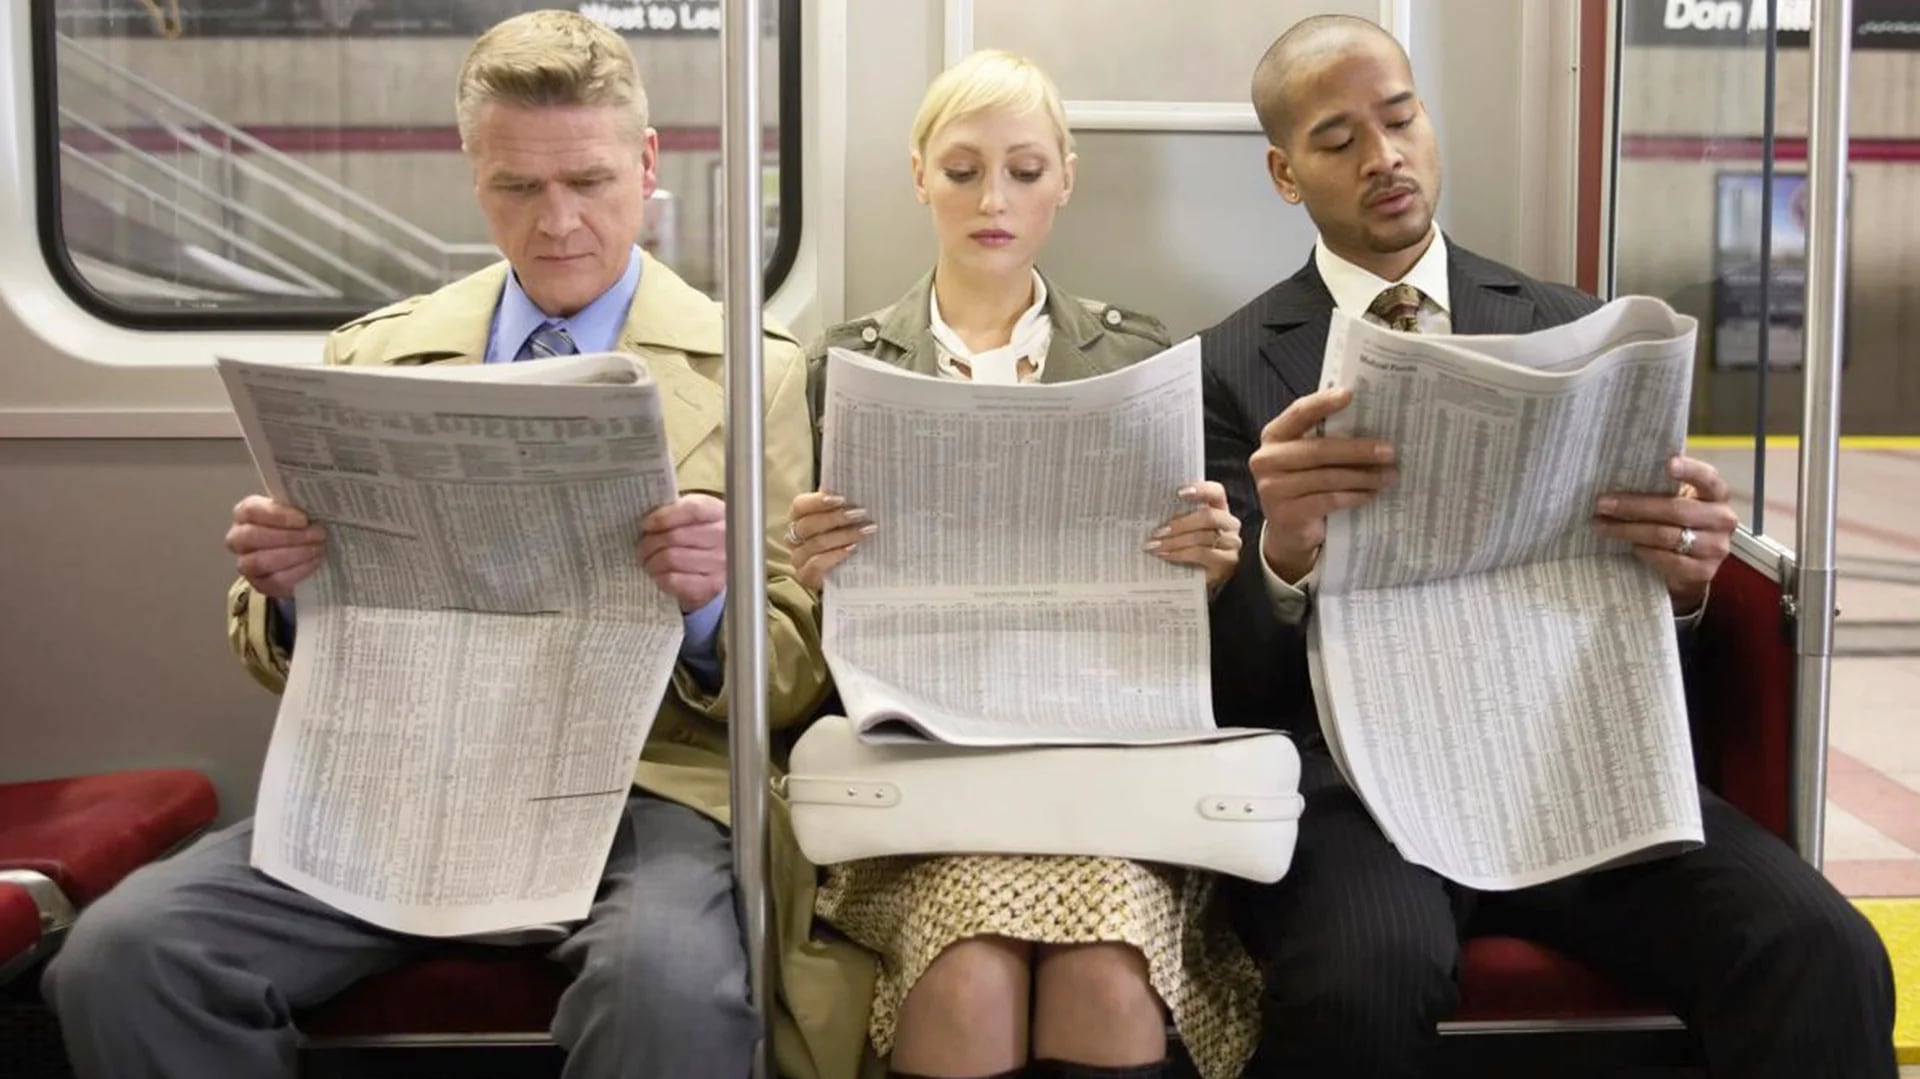 El término manspreading alude a la manera de sentarse de algunos hombres, en especial en el transporte público